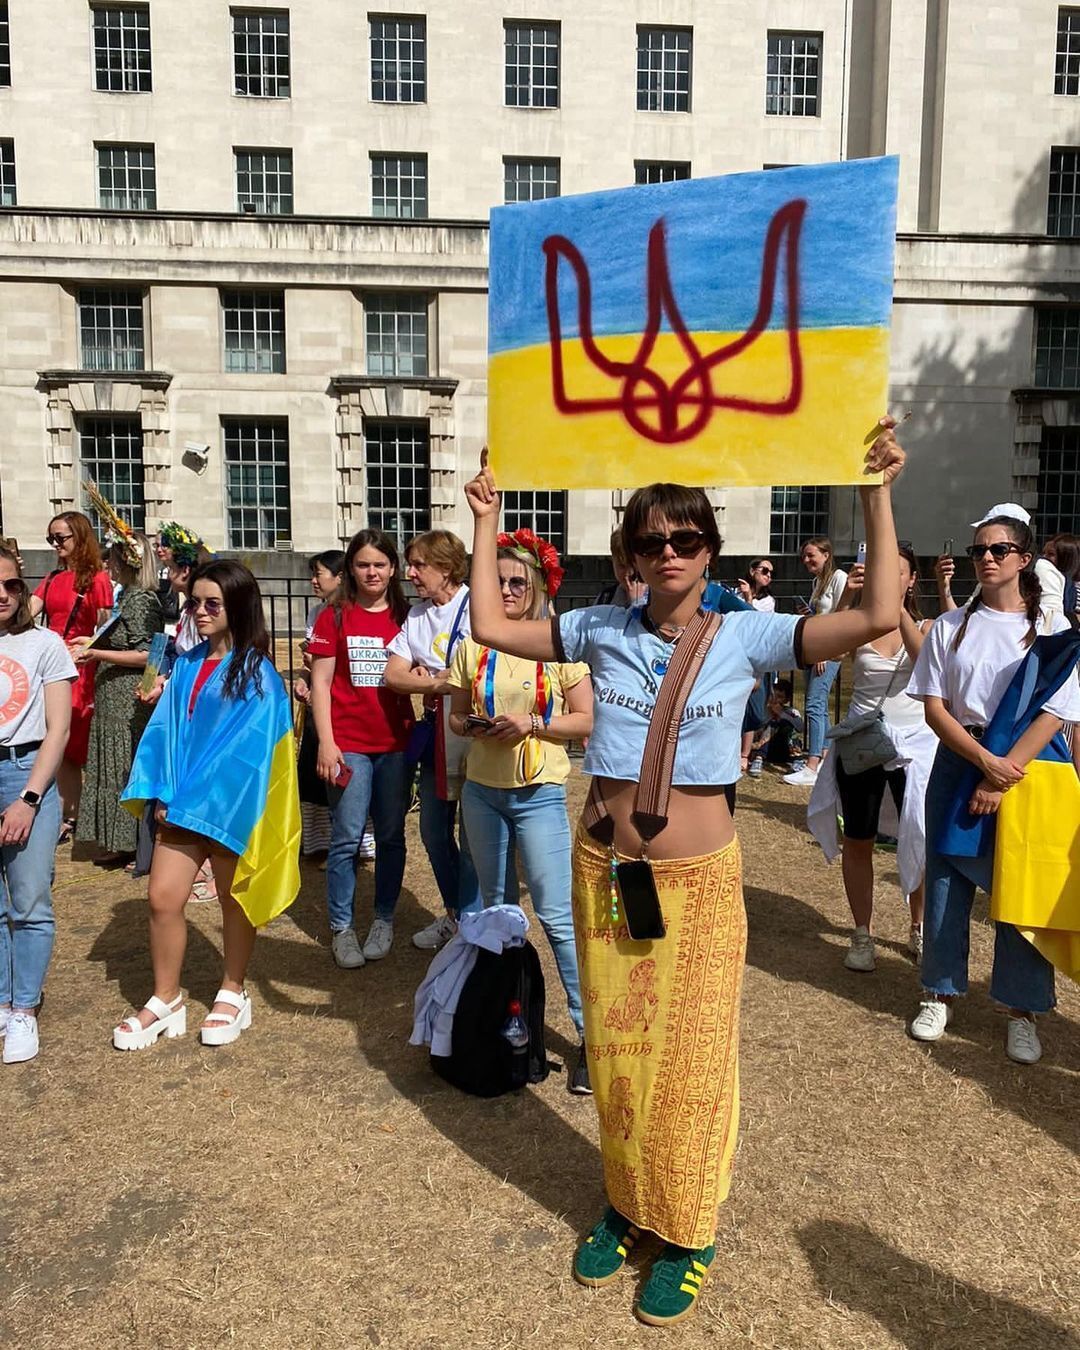 Валид Арфуш показал дочь с символикой Украины в Лондоне и опубликовал крик души о детях-"предателях"